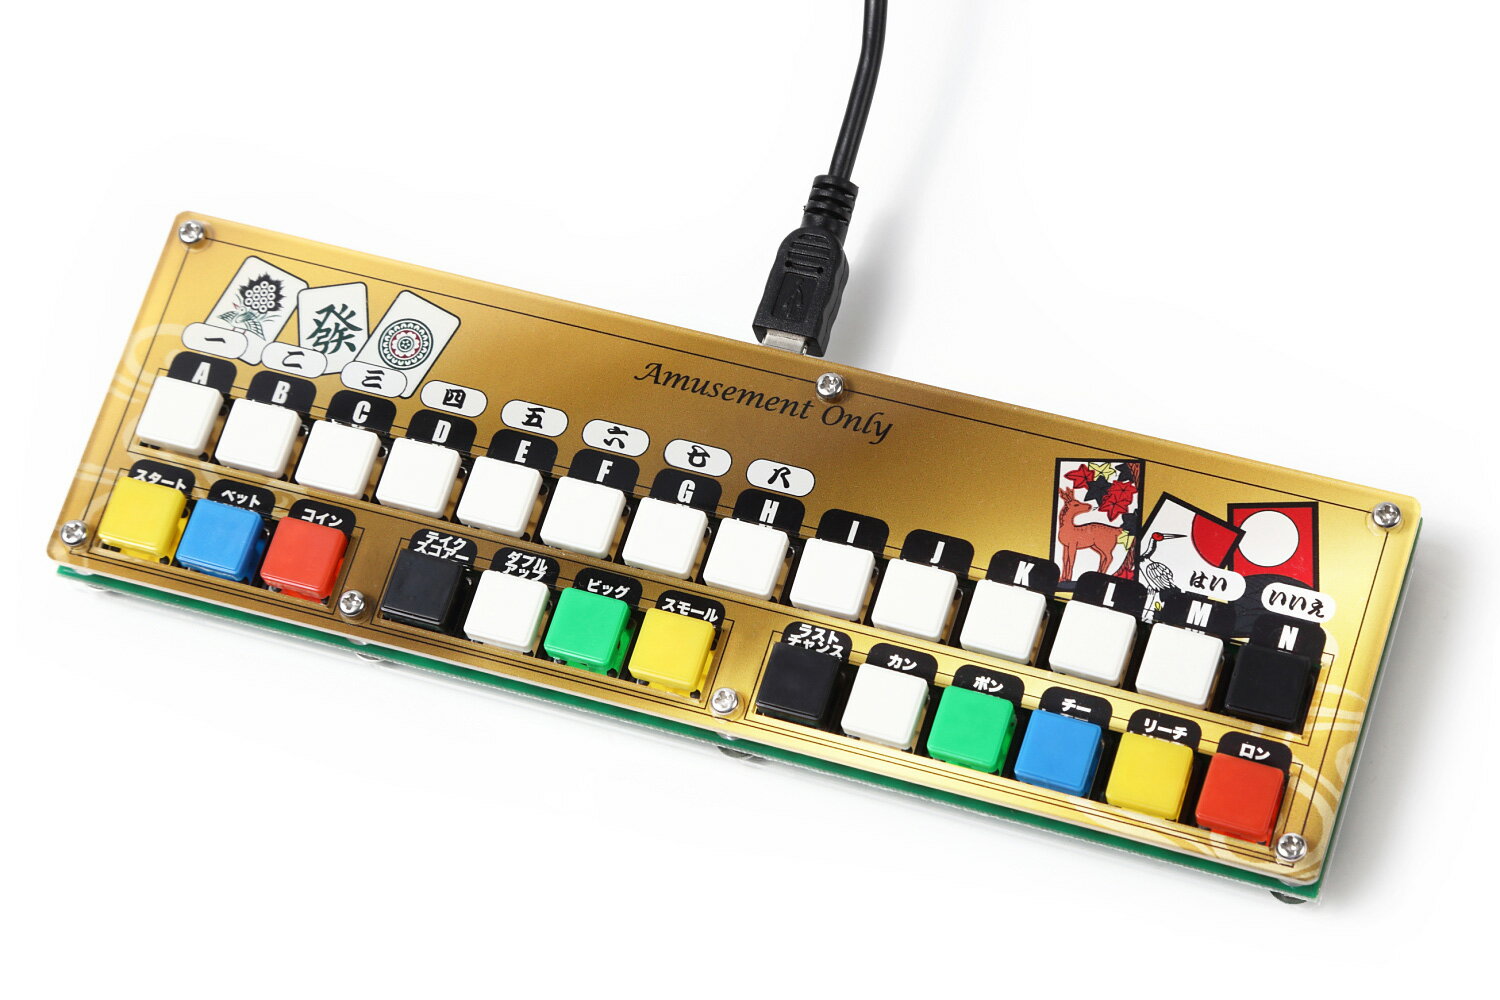 mame や hyperspin 等の 麻雀エミュレーターに最適 USB 麻雀 花札コントローラー/レトロゲーム アーケード 筐体 arca…